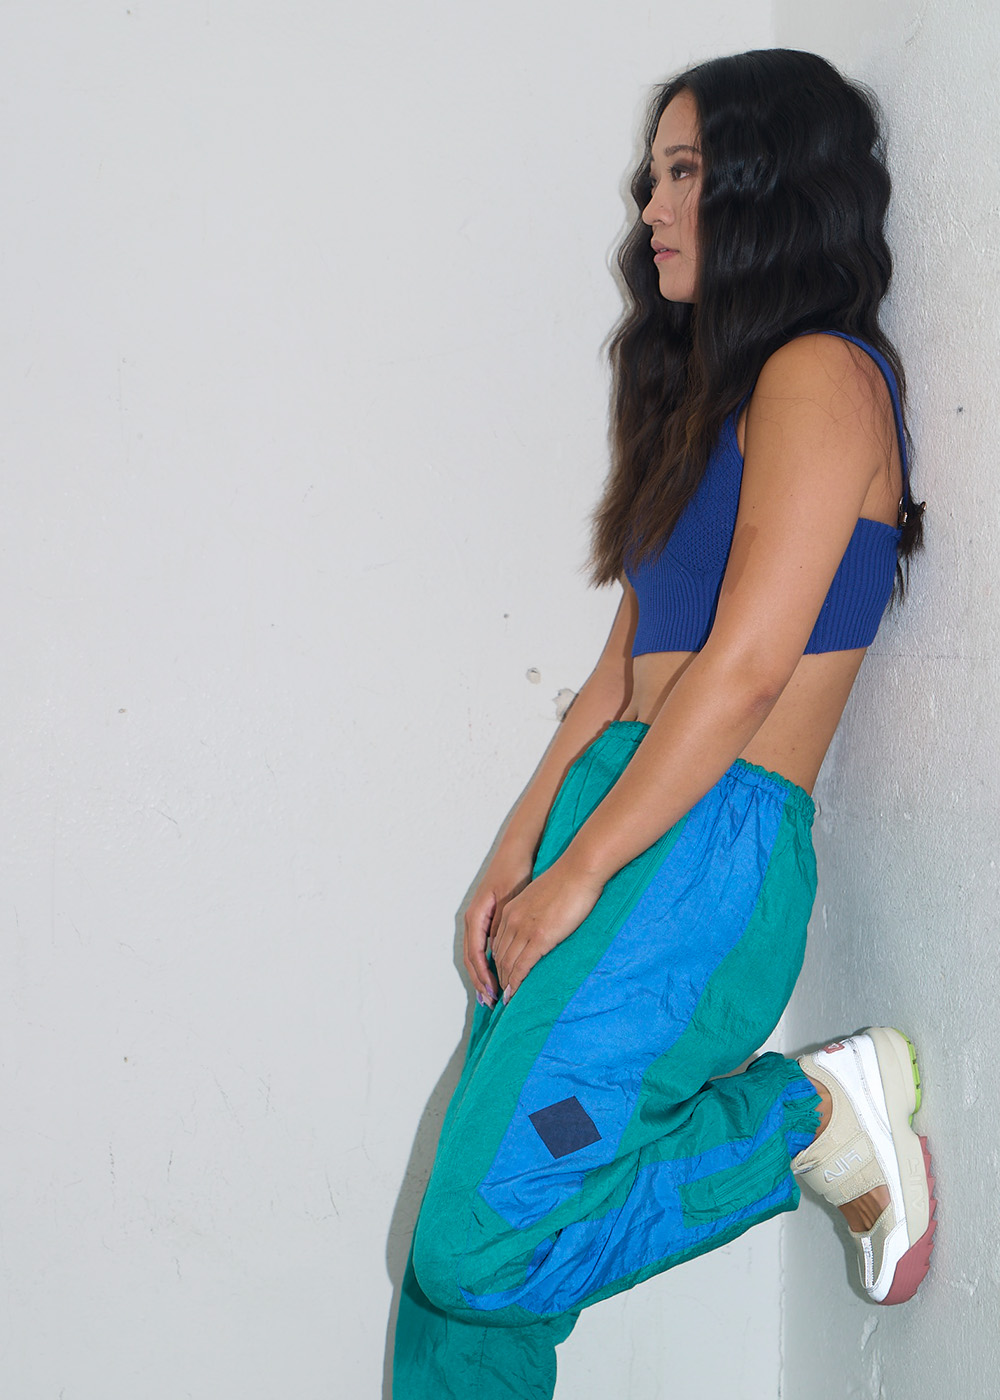 Kvinna iklädd retro sportkläder i starka färger lutar sig mot en vägg.